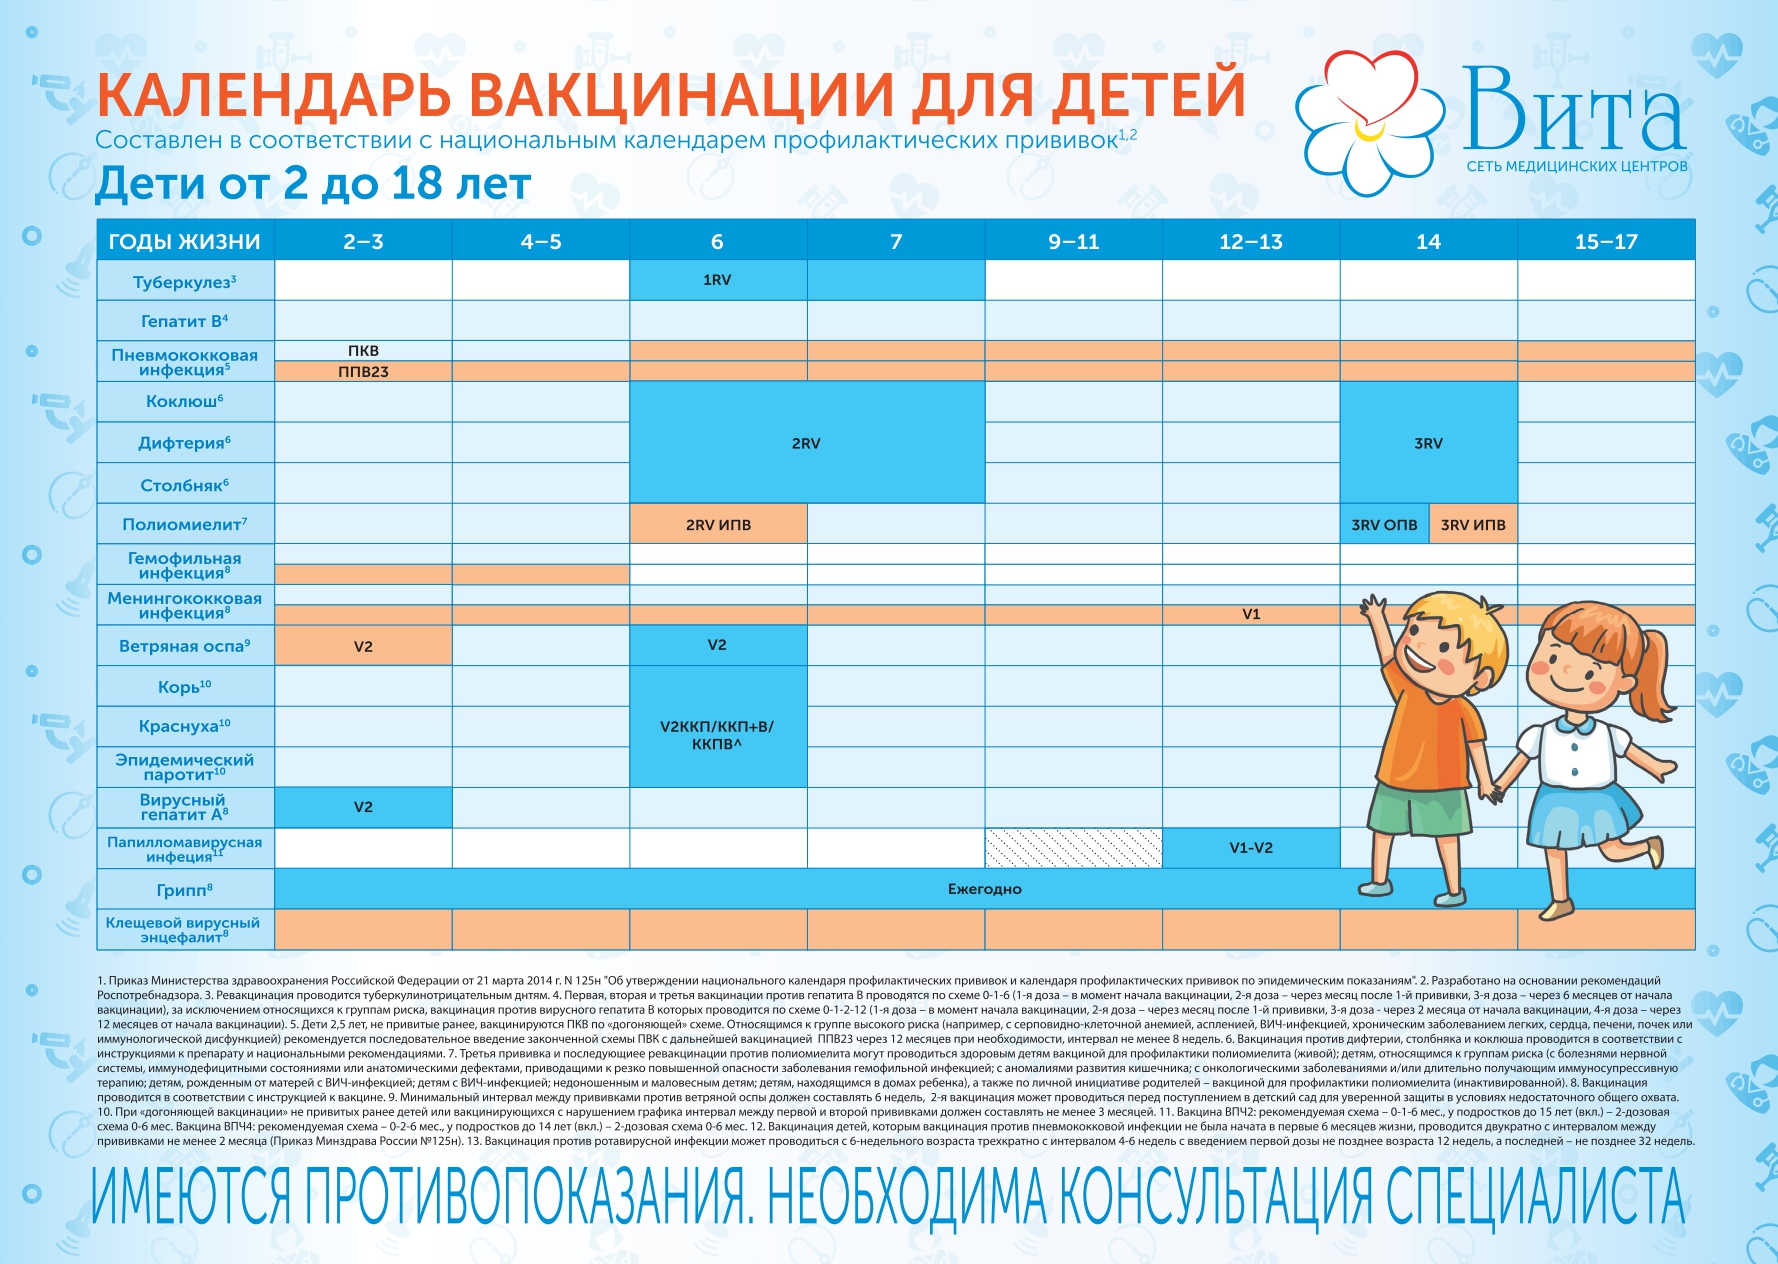 Прививка адсм сколько раз. Календарь прививок для детей в России. АДСМ прививка календарь прививок. Календарь прививок для всех взрослых. Плановые осмотры детей после года.